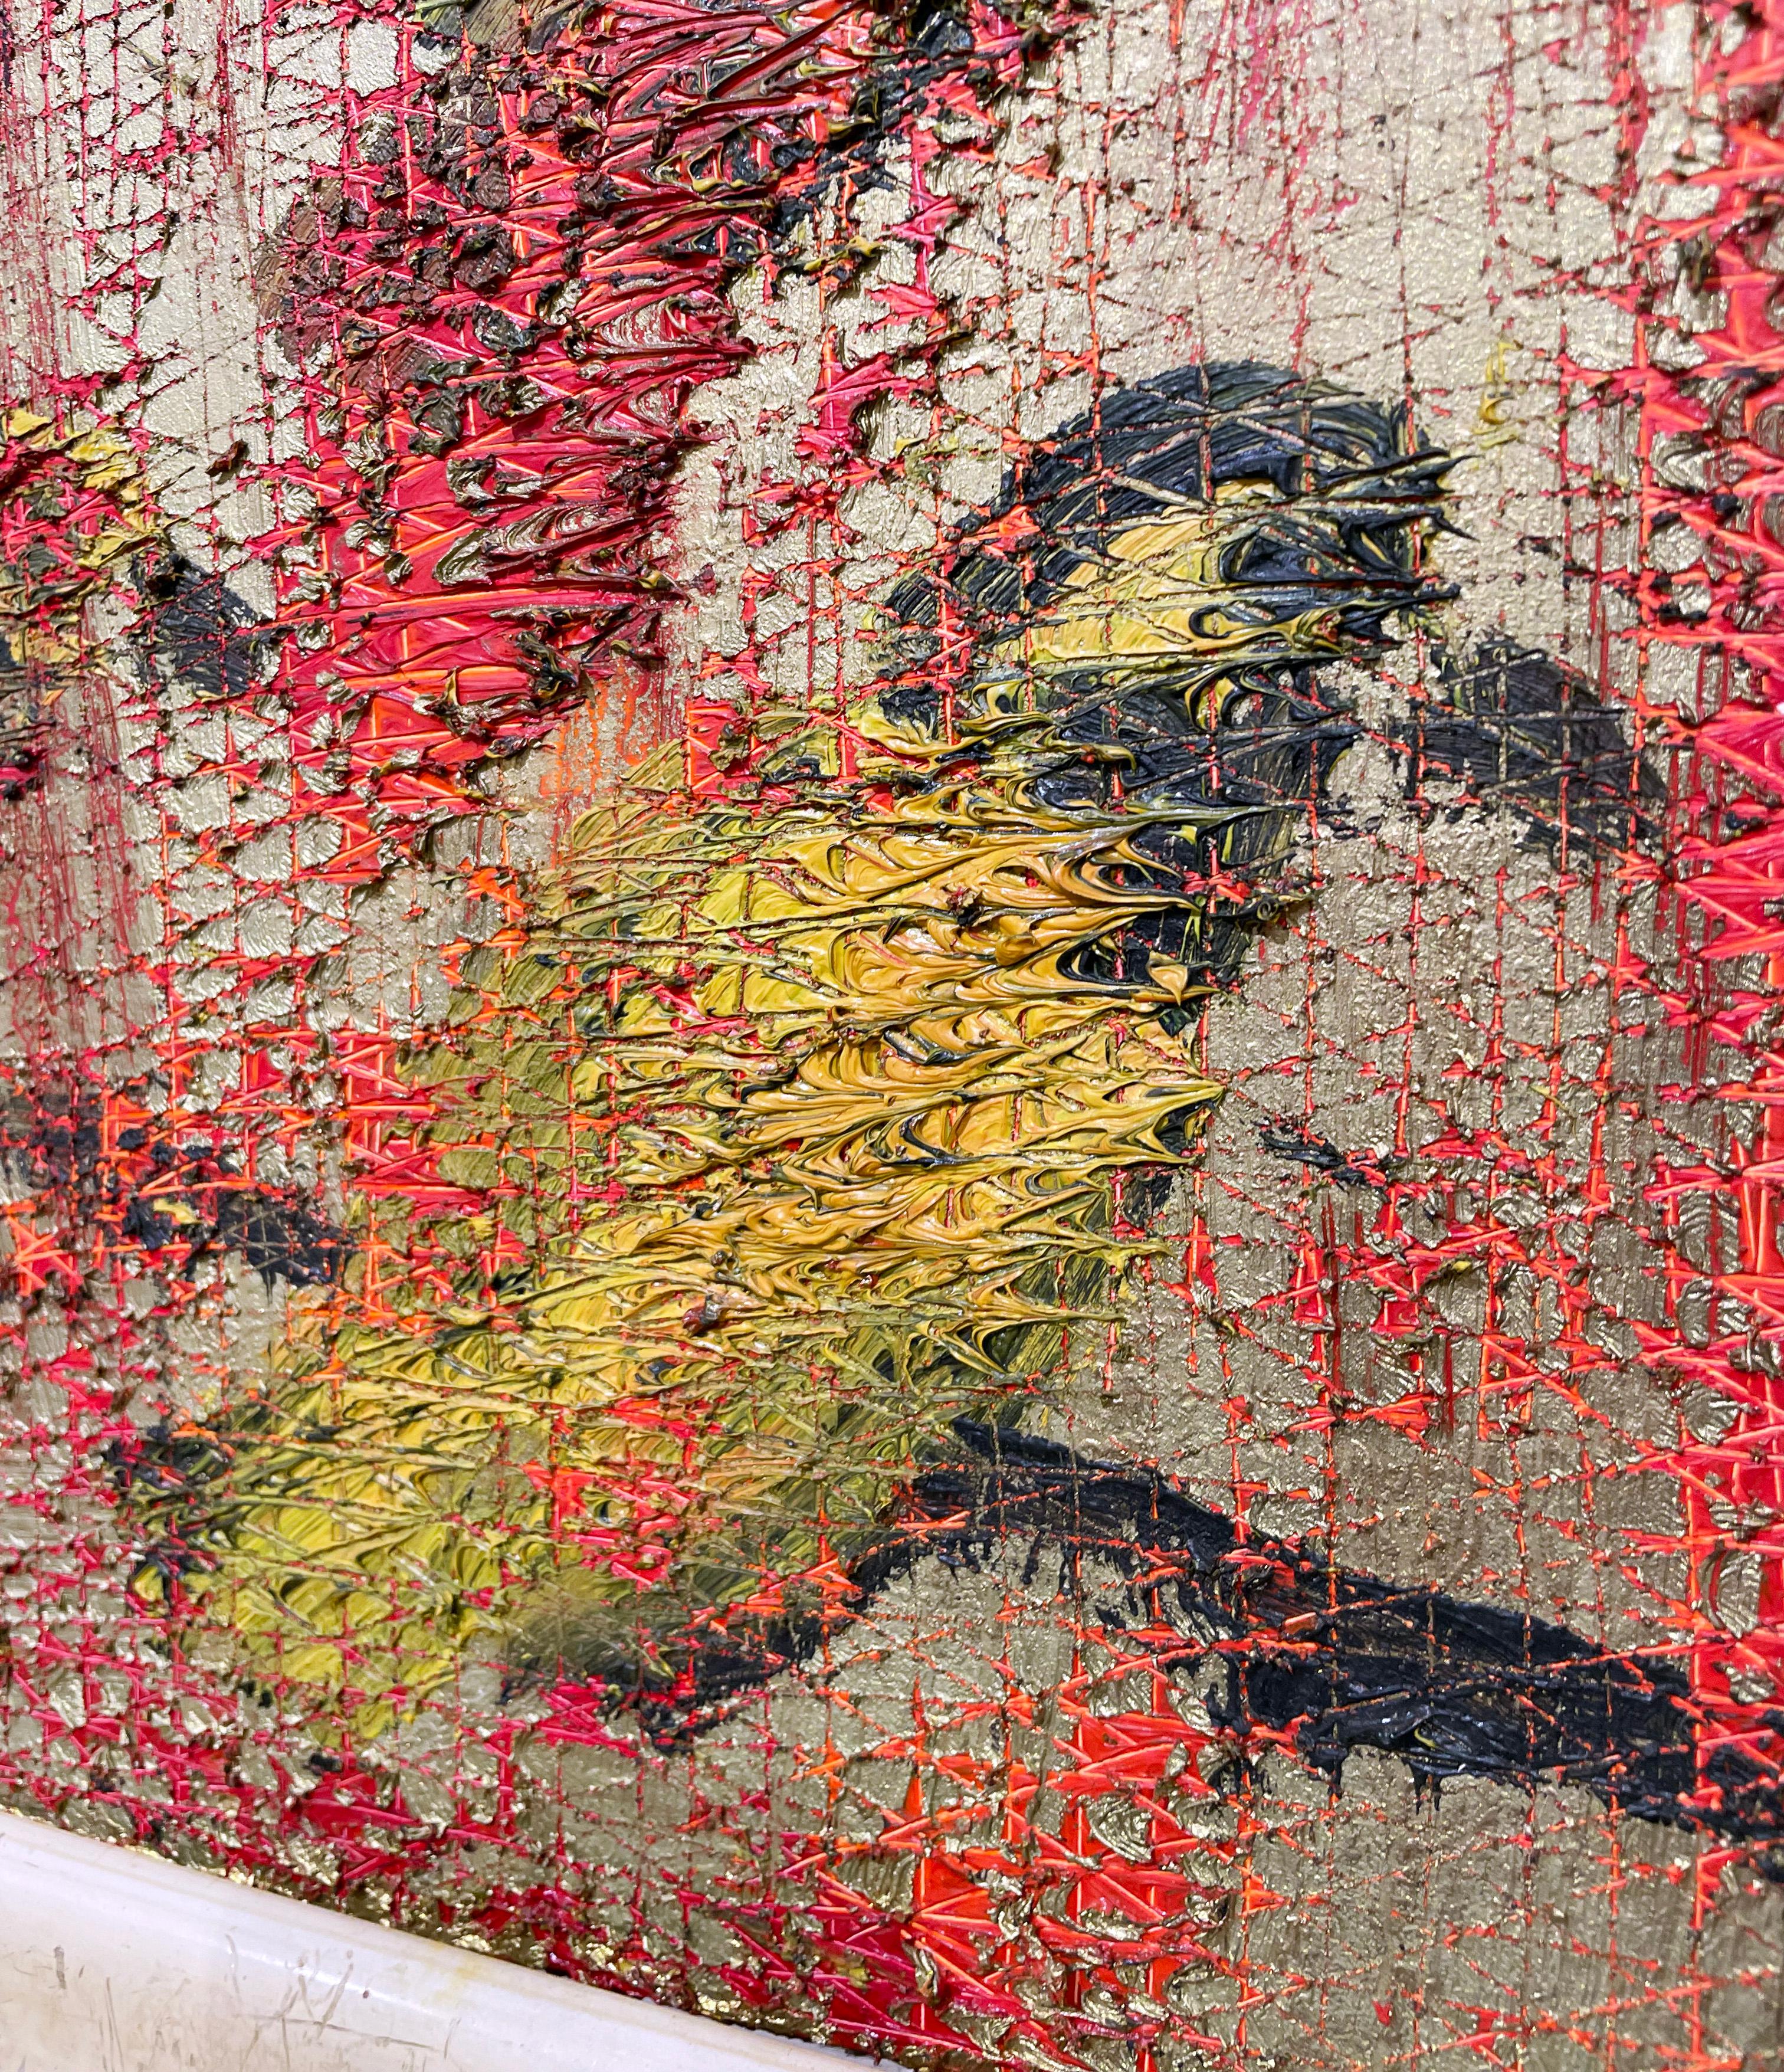 Artist:  Slonem, Hunt
Title:  Bishops
Series:  Birds
Date:  2010
Medium:  Oil on panel
Unframed Dimensions:  20